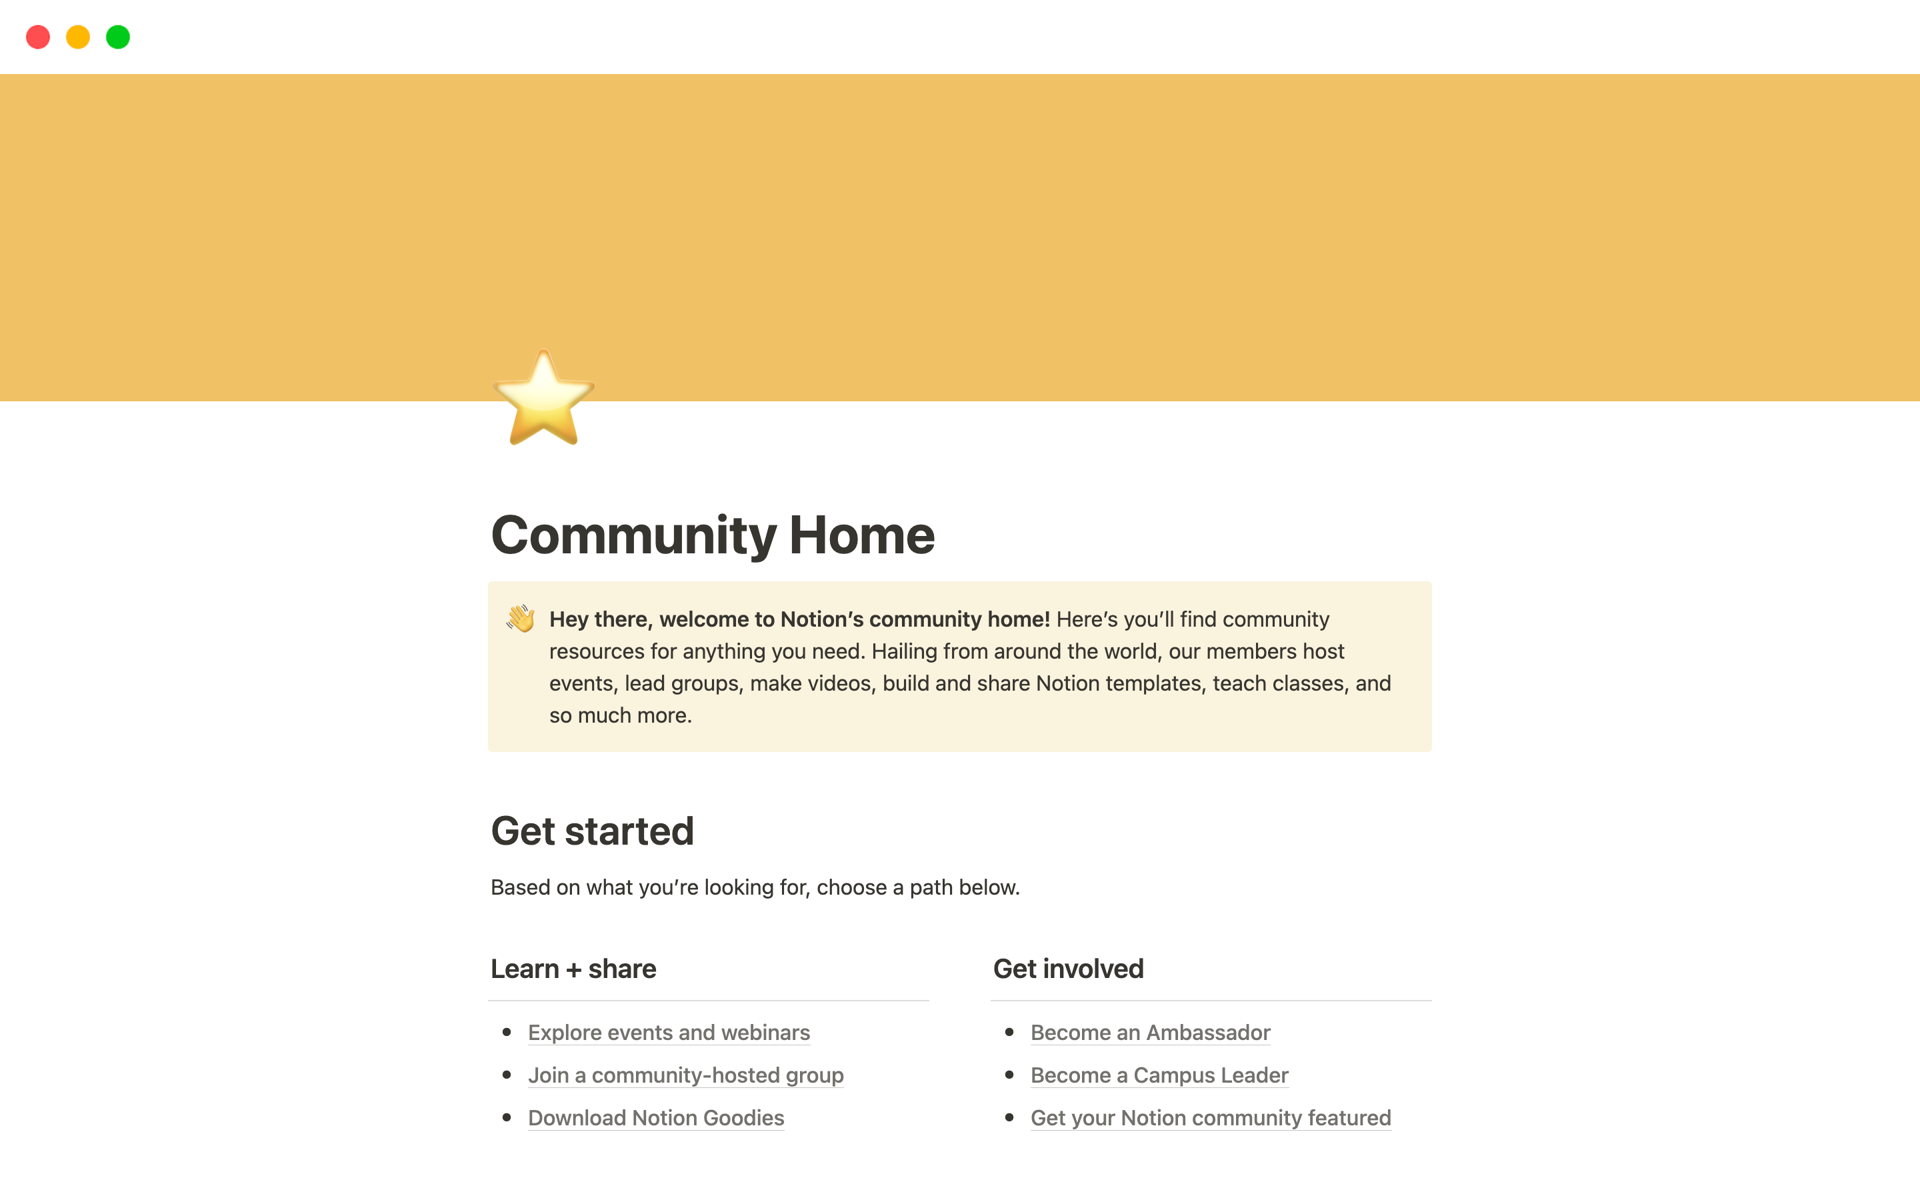 En förhandsgranskning av mallen för Notion’s community home